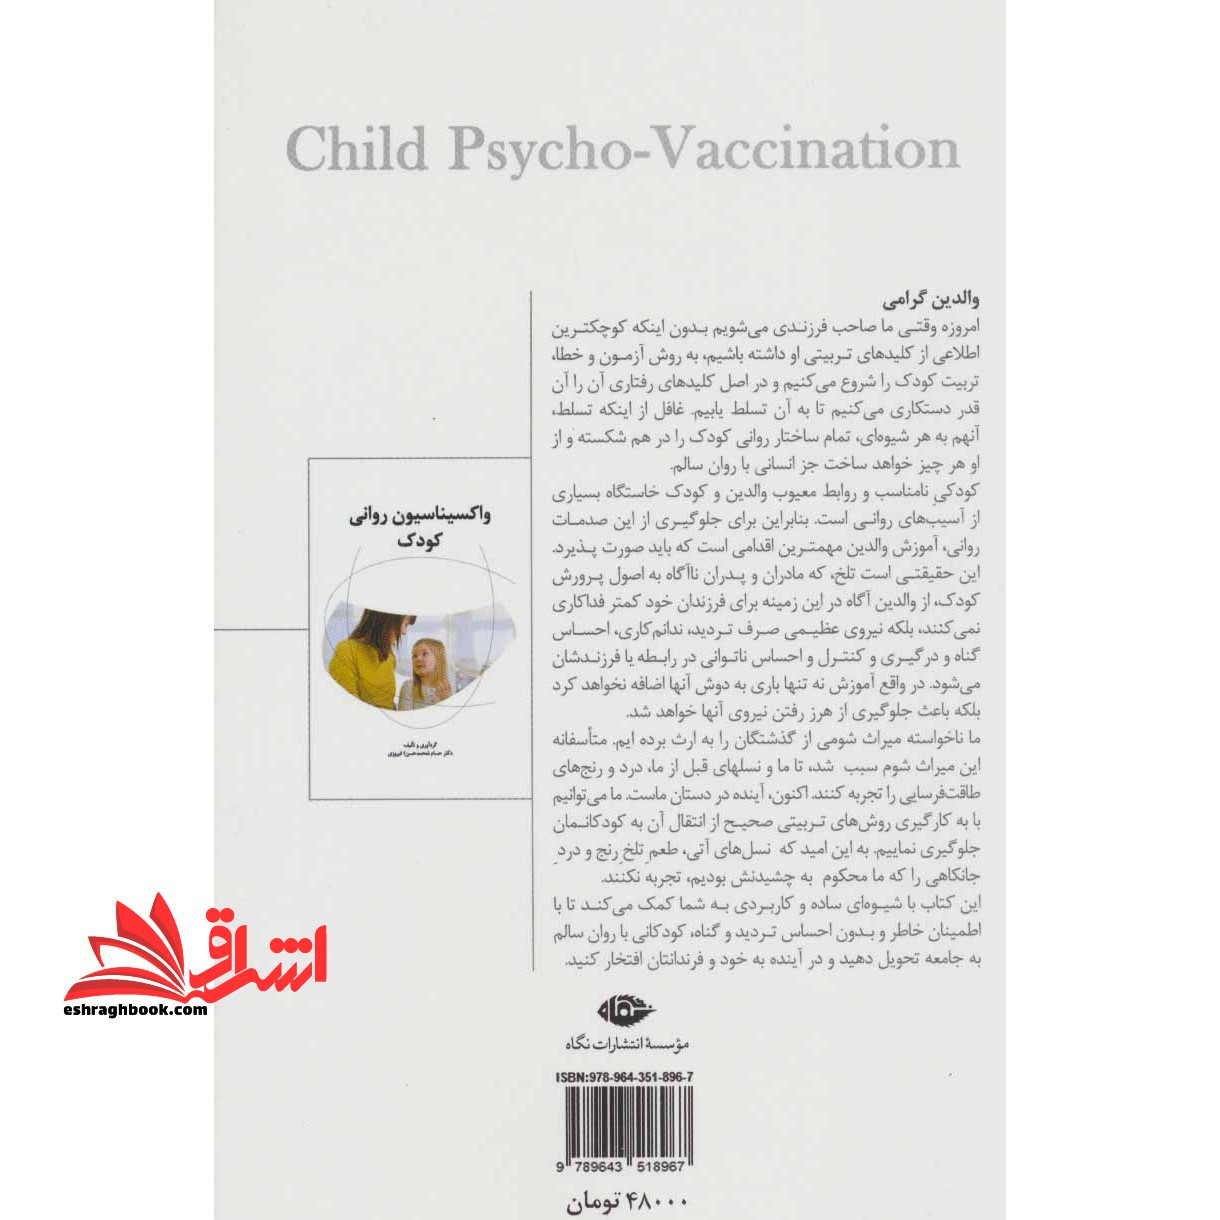 واکسیناسیون روانی کودک،همراه با سی دی